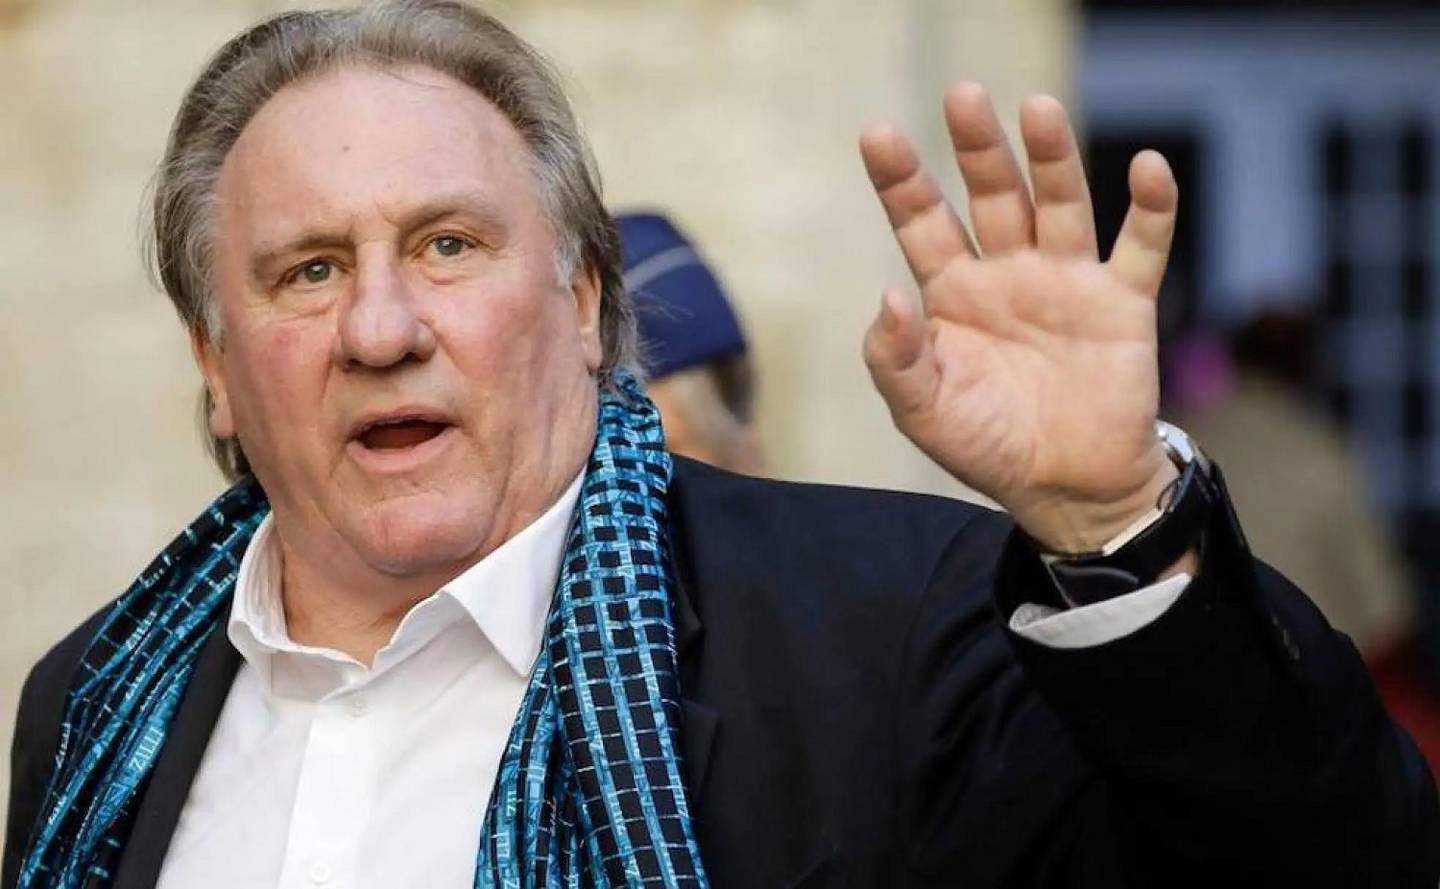 Gerard Depardieu ha negado las acusaciones, manteniendo su inocencia Sin embargo, la acumulación de testimonios y procedimientos legales en su contra ha generado un intenso debate público sobre su conducta.